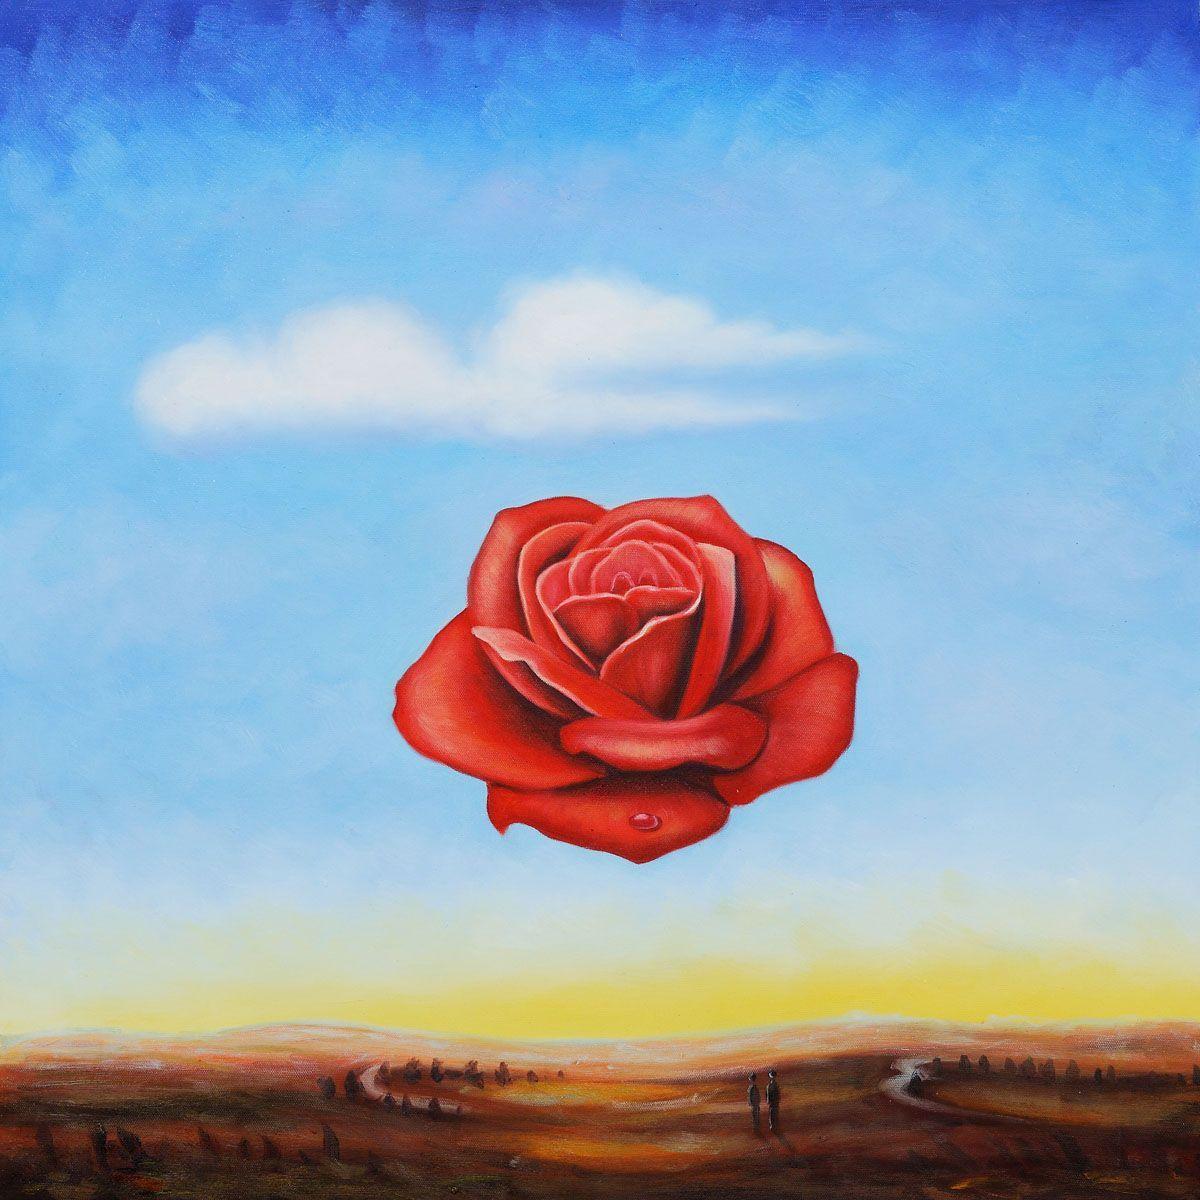 عکس نقاشی سورئال گل رز قرمز معلق در منطقه ای بیابانی